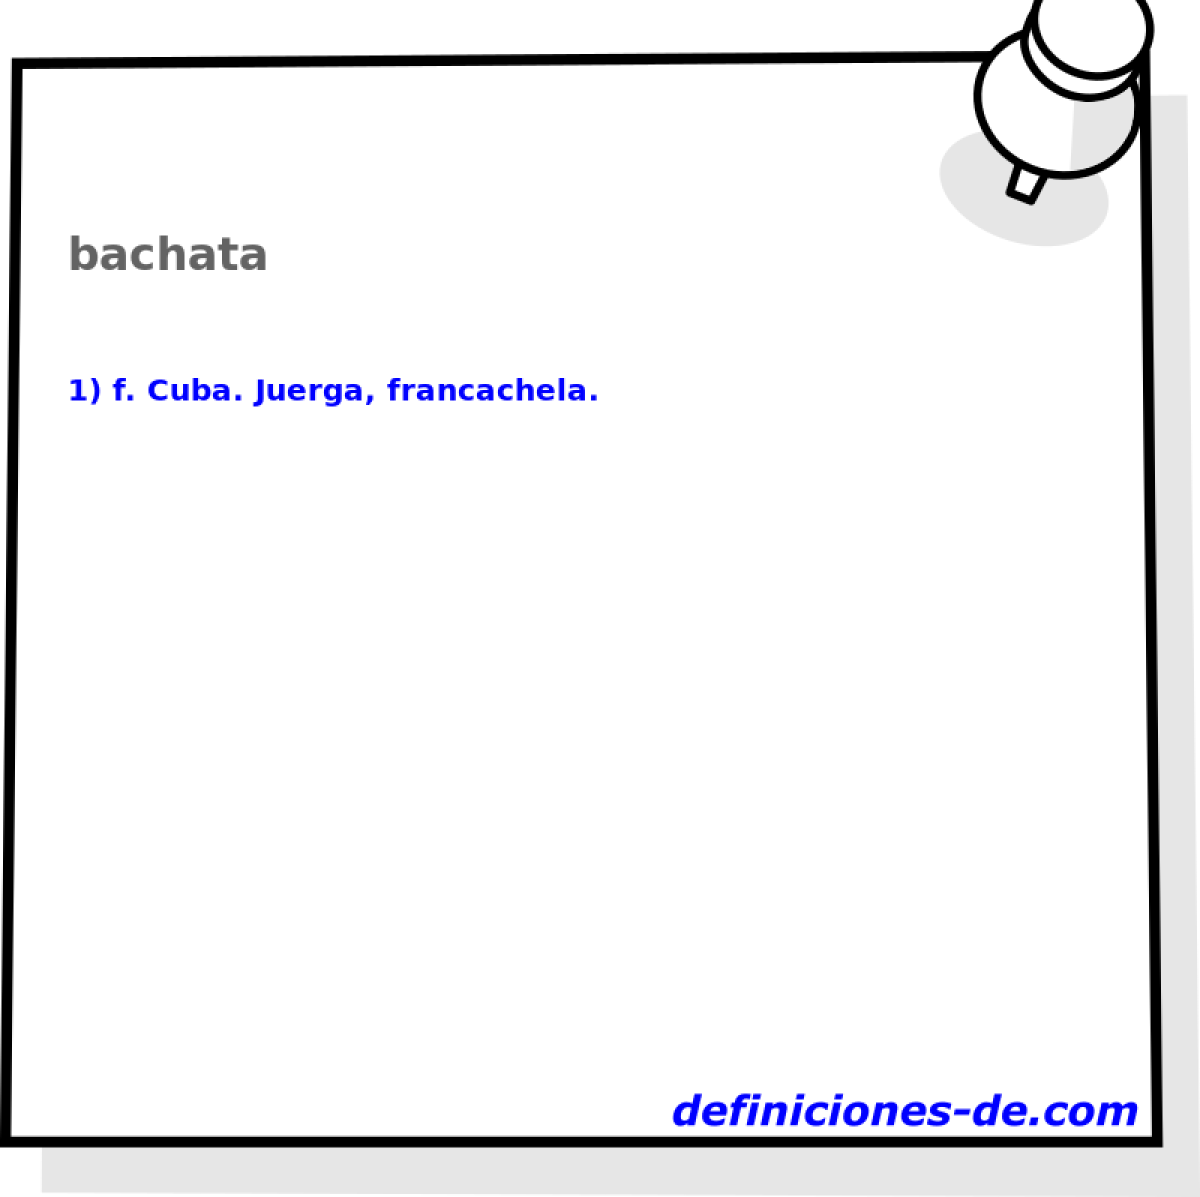 bachata 